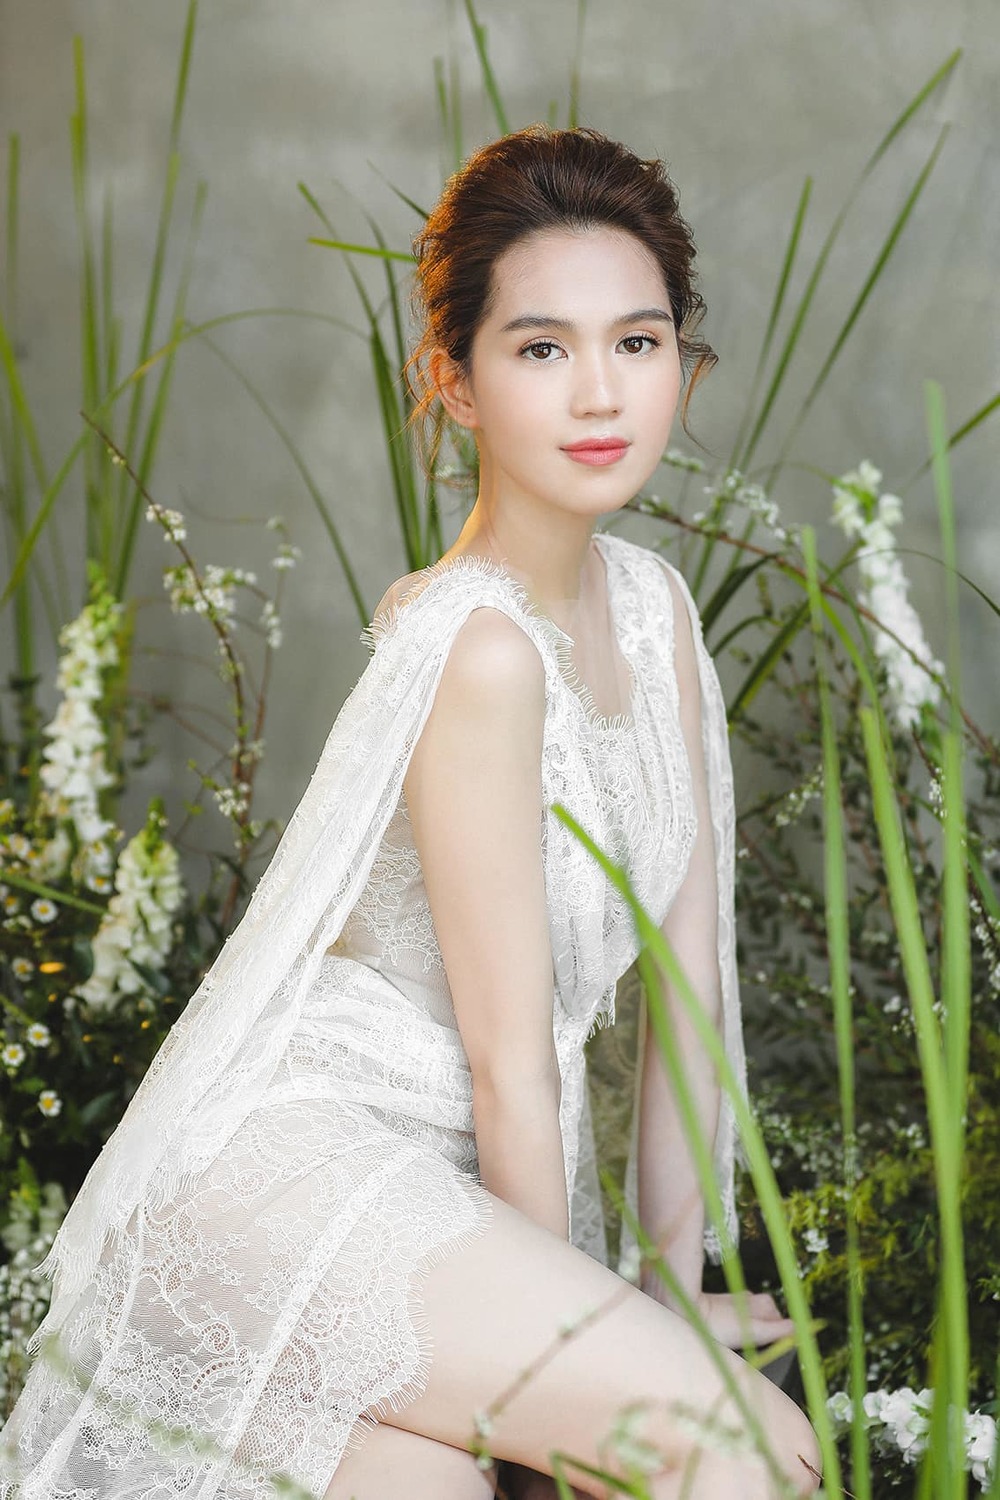  
Ngọc Trinh xinh đẹp, dịu dàng khi diện chiếc váy ren trắng trong bộ ảnh thực hiện cách đây không lâu. (Ảnh: FBNV) - Tin sao Viet - Tin tuc sao Viet - Scandal sao Viet - Tin tuc cua Sao - Tin cua Sao